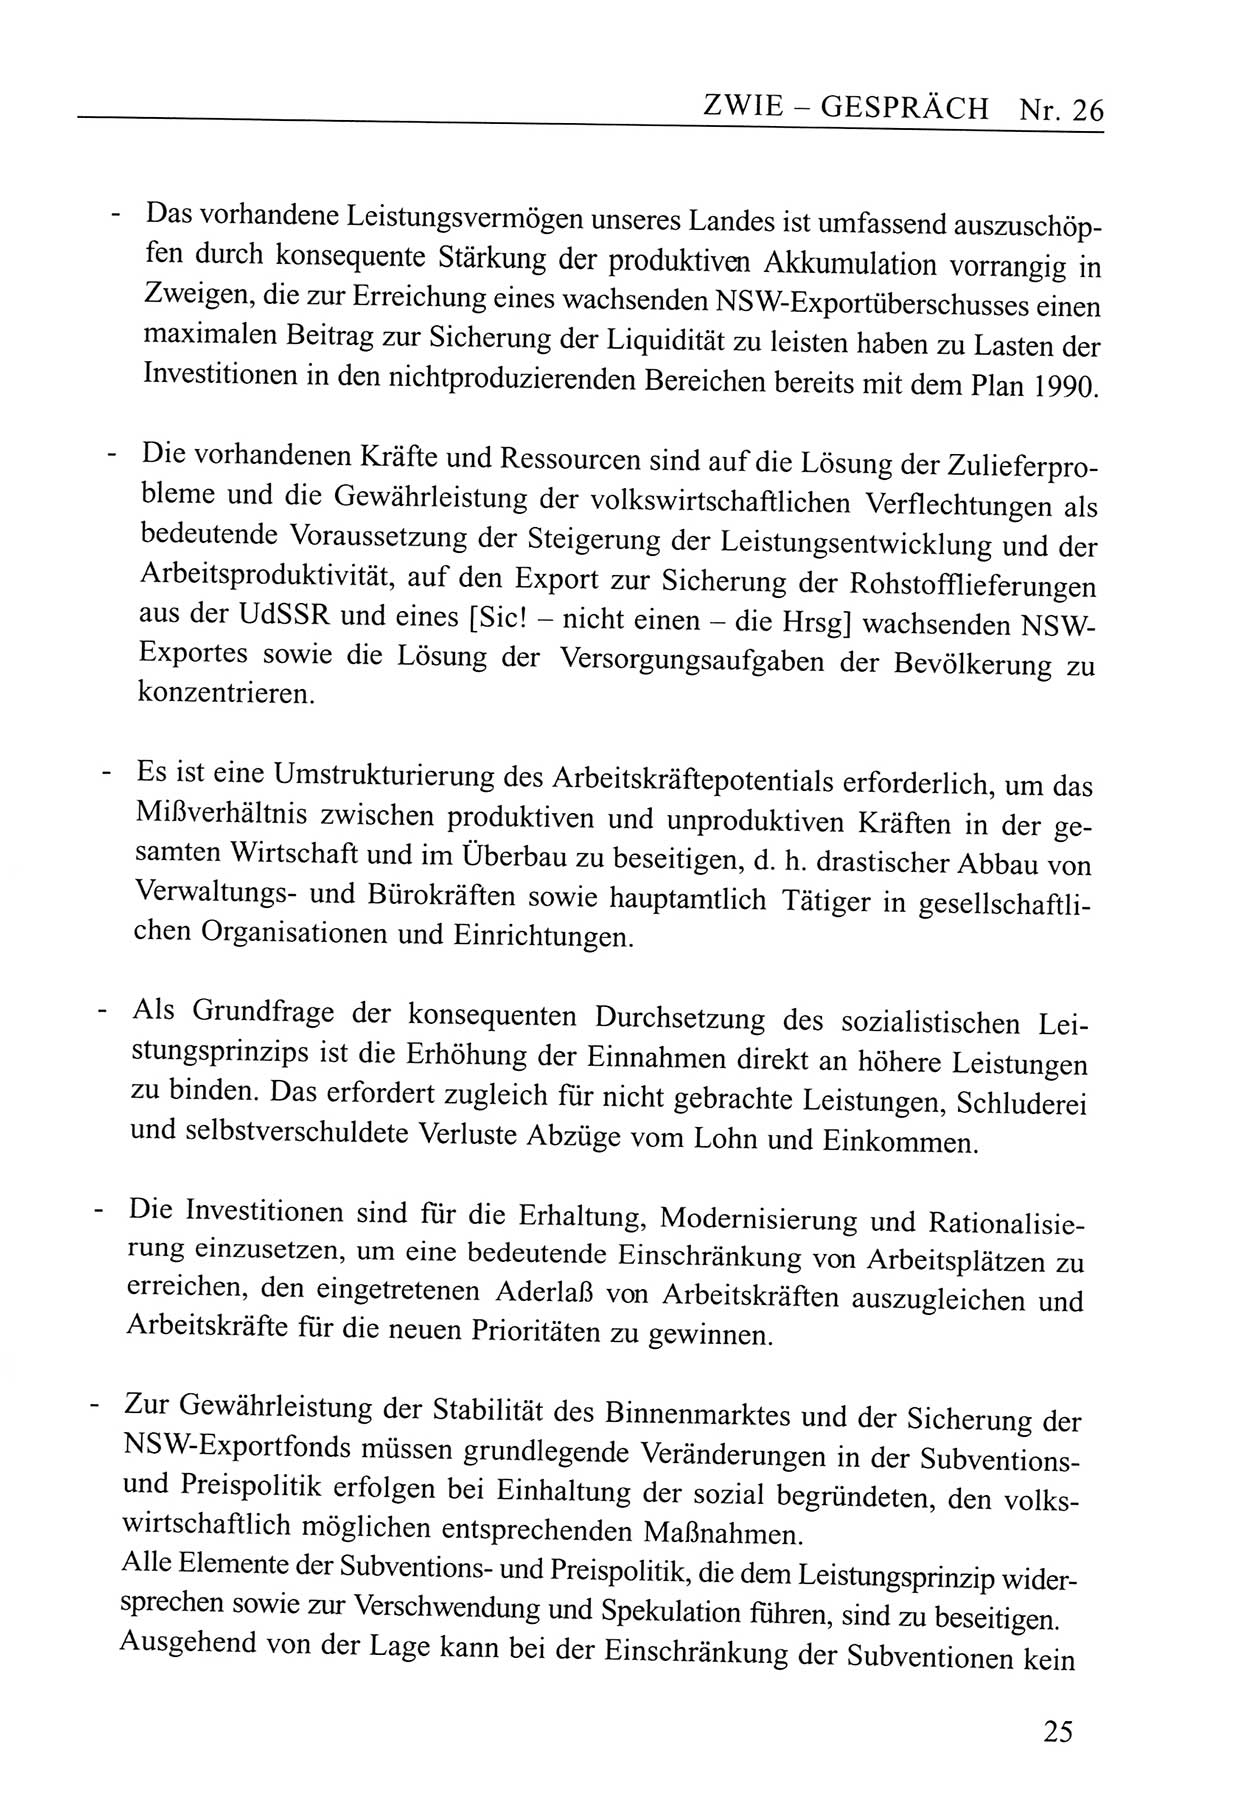 Zwie-Gespräch, Beiträge zum Umgang mit der Staatssicherheits-Vergangenheit [Deutsche Demokratische Republik (DDR)], Ausgabe Nr. 26, Berlin 1995, Seite 25 (Zwie-Gespr. Ausg. 26 1995, S. 25)